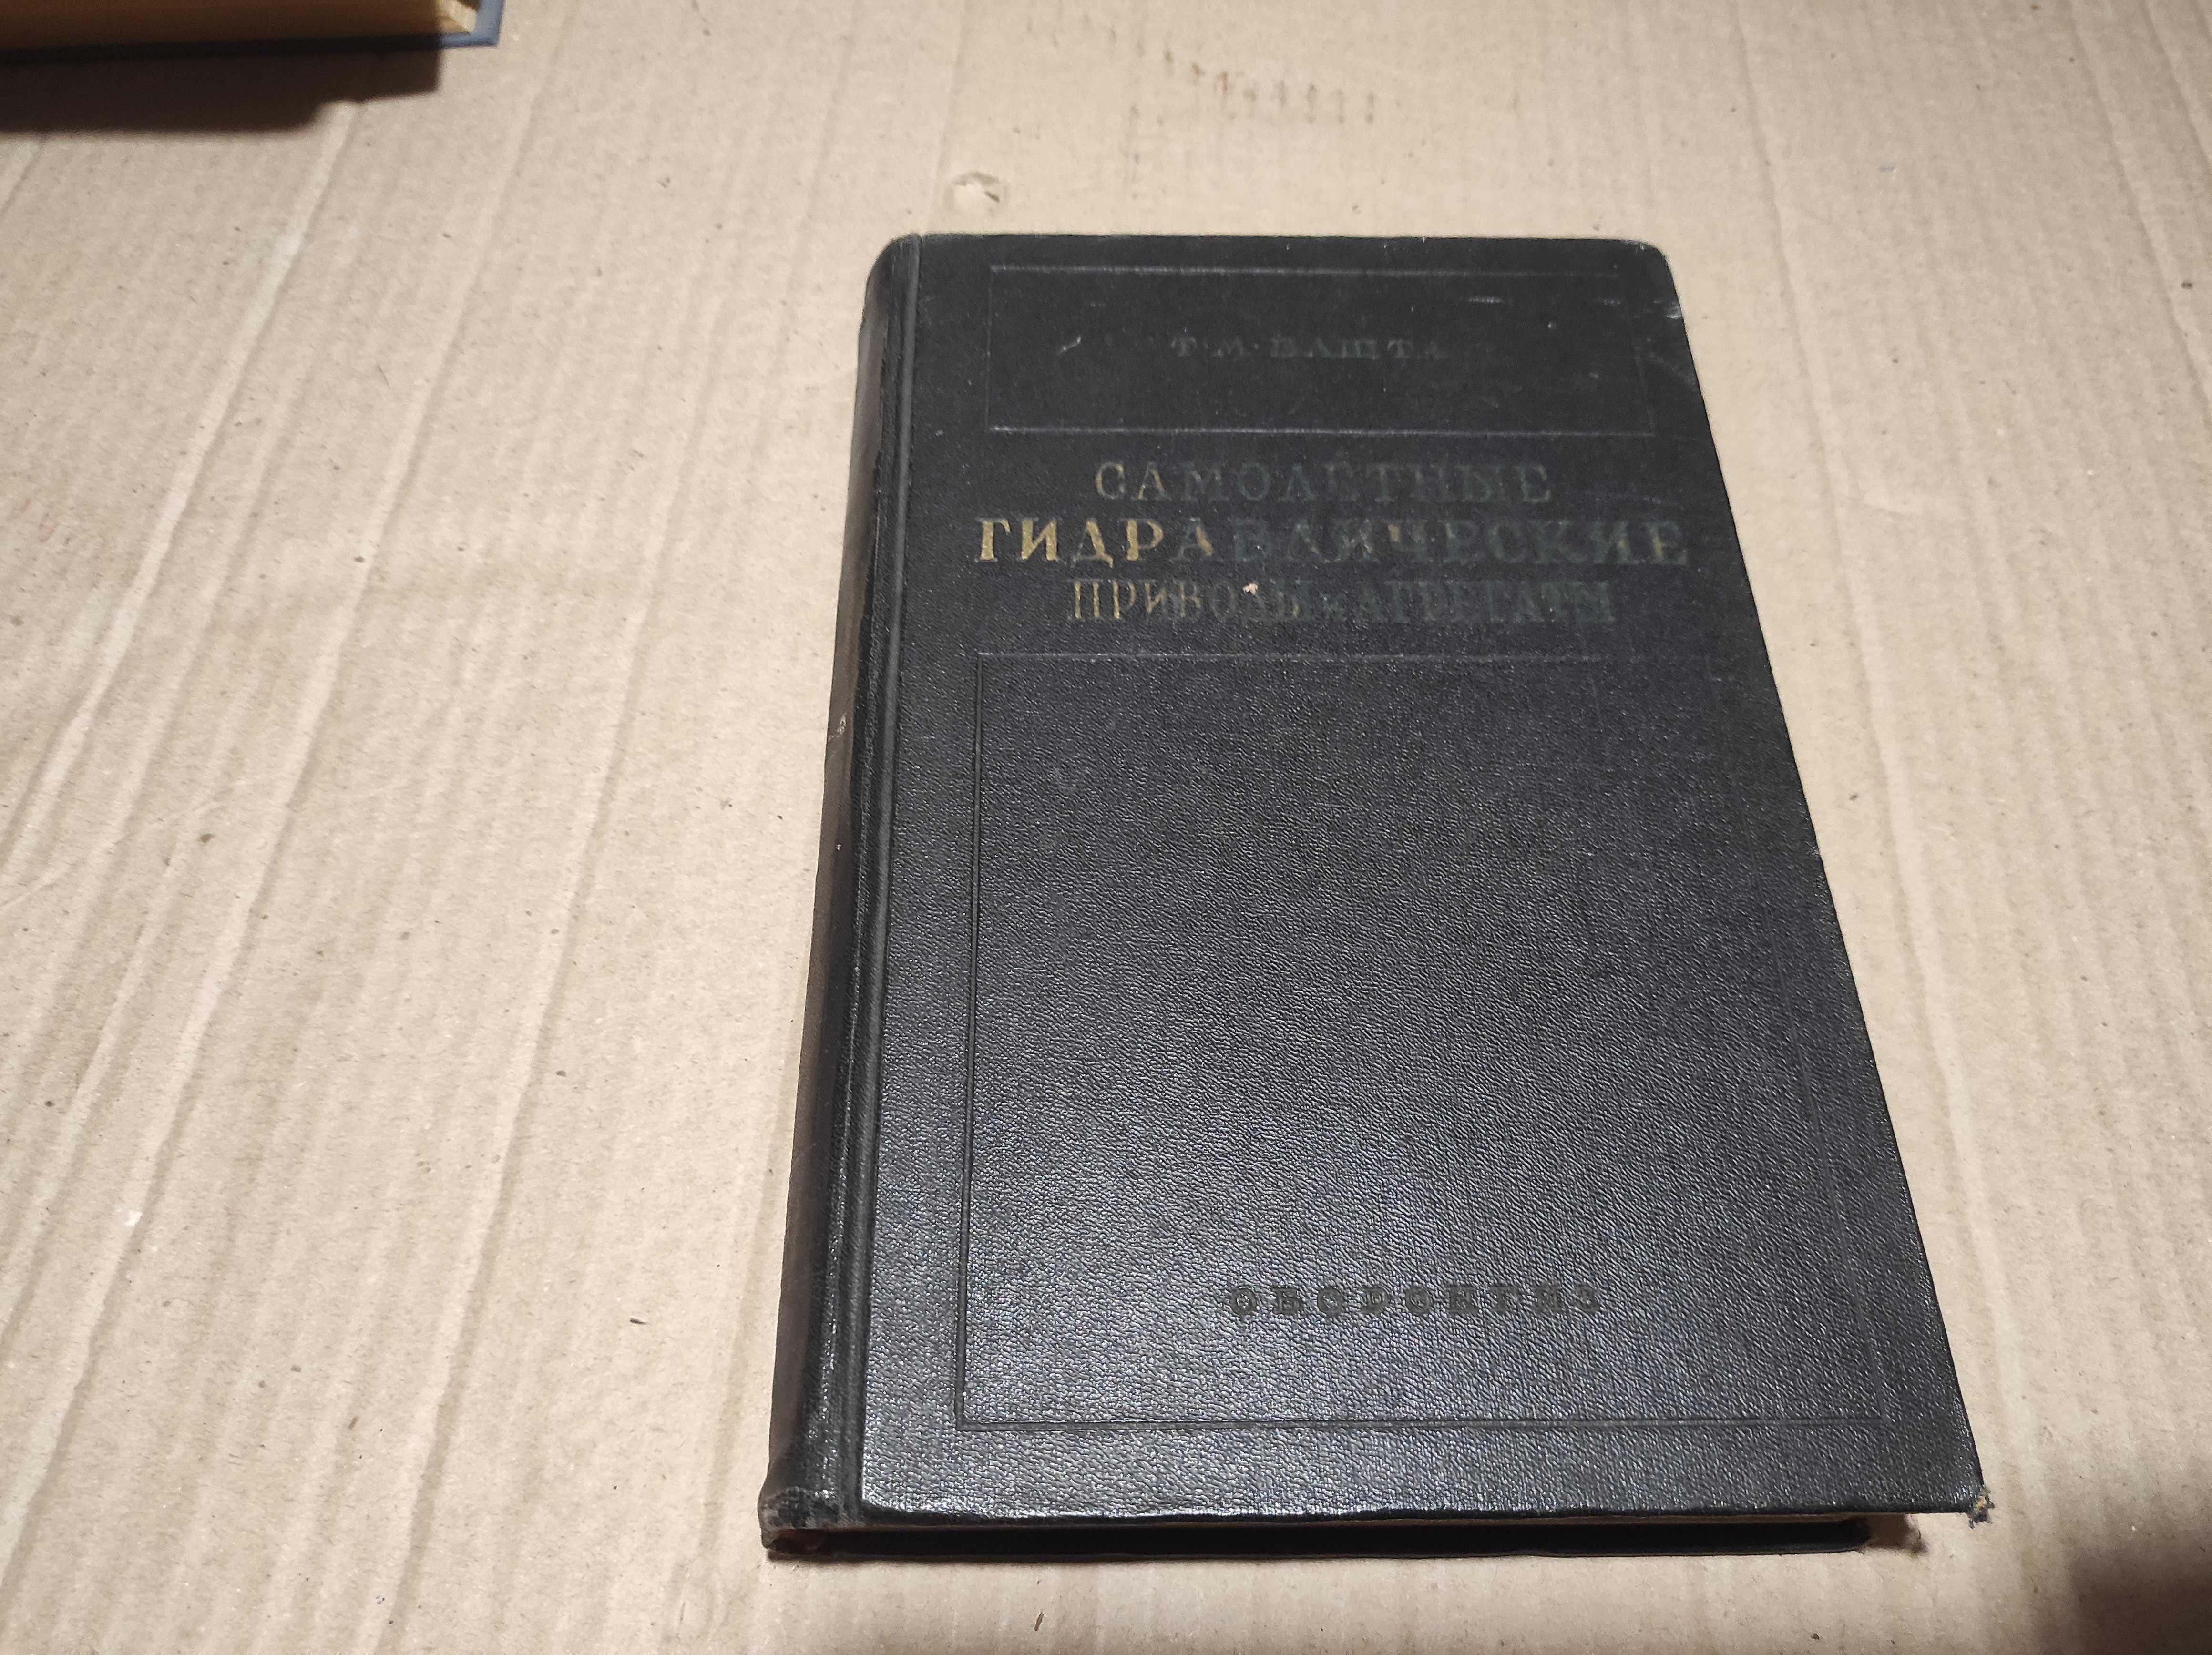 Книга "Самолетные гидравлические приводы и агрегаты" Т.М. Башта 1951 г